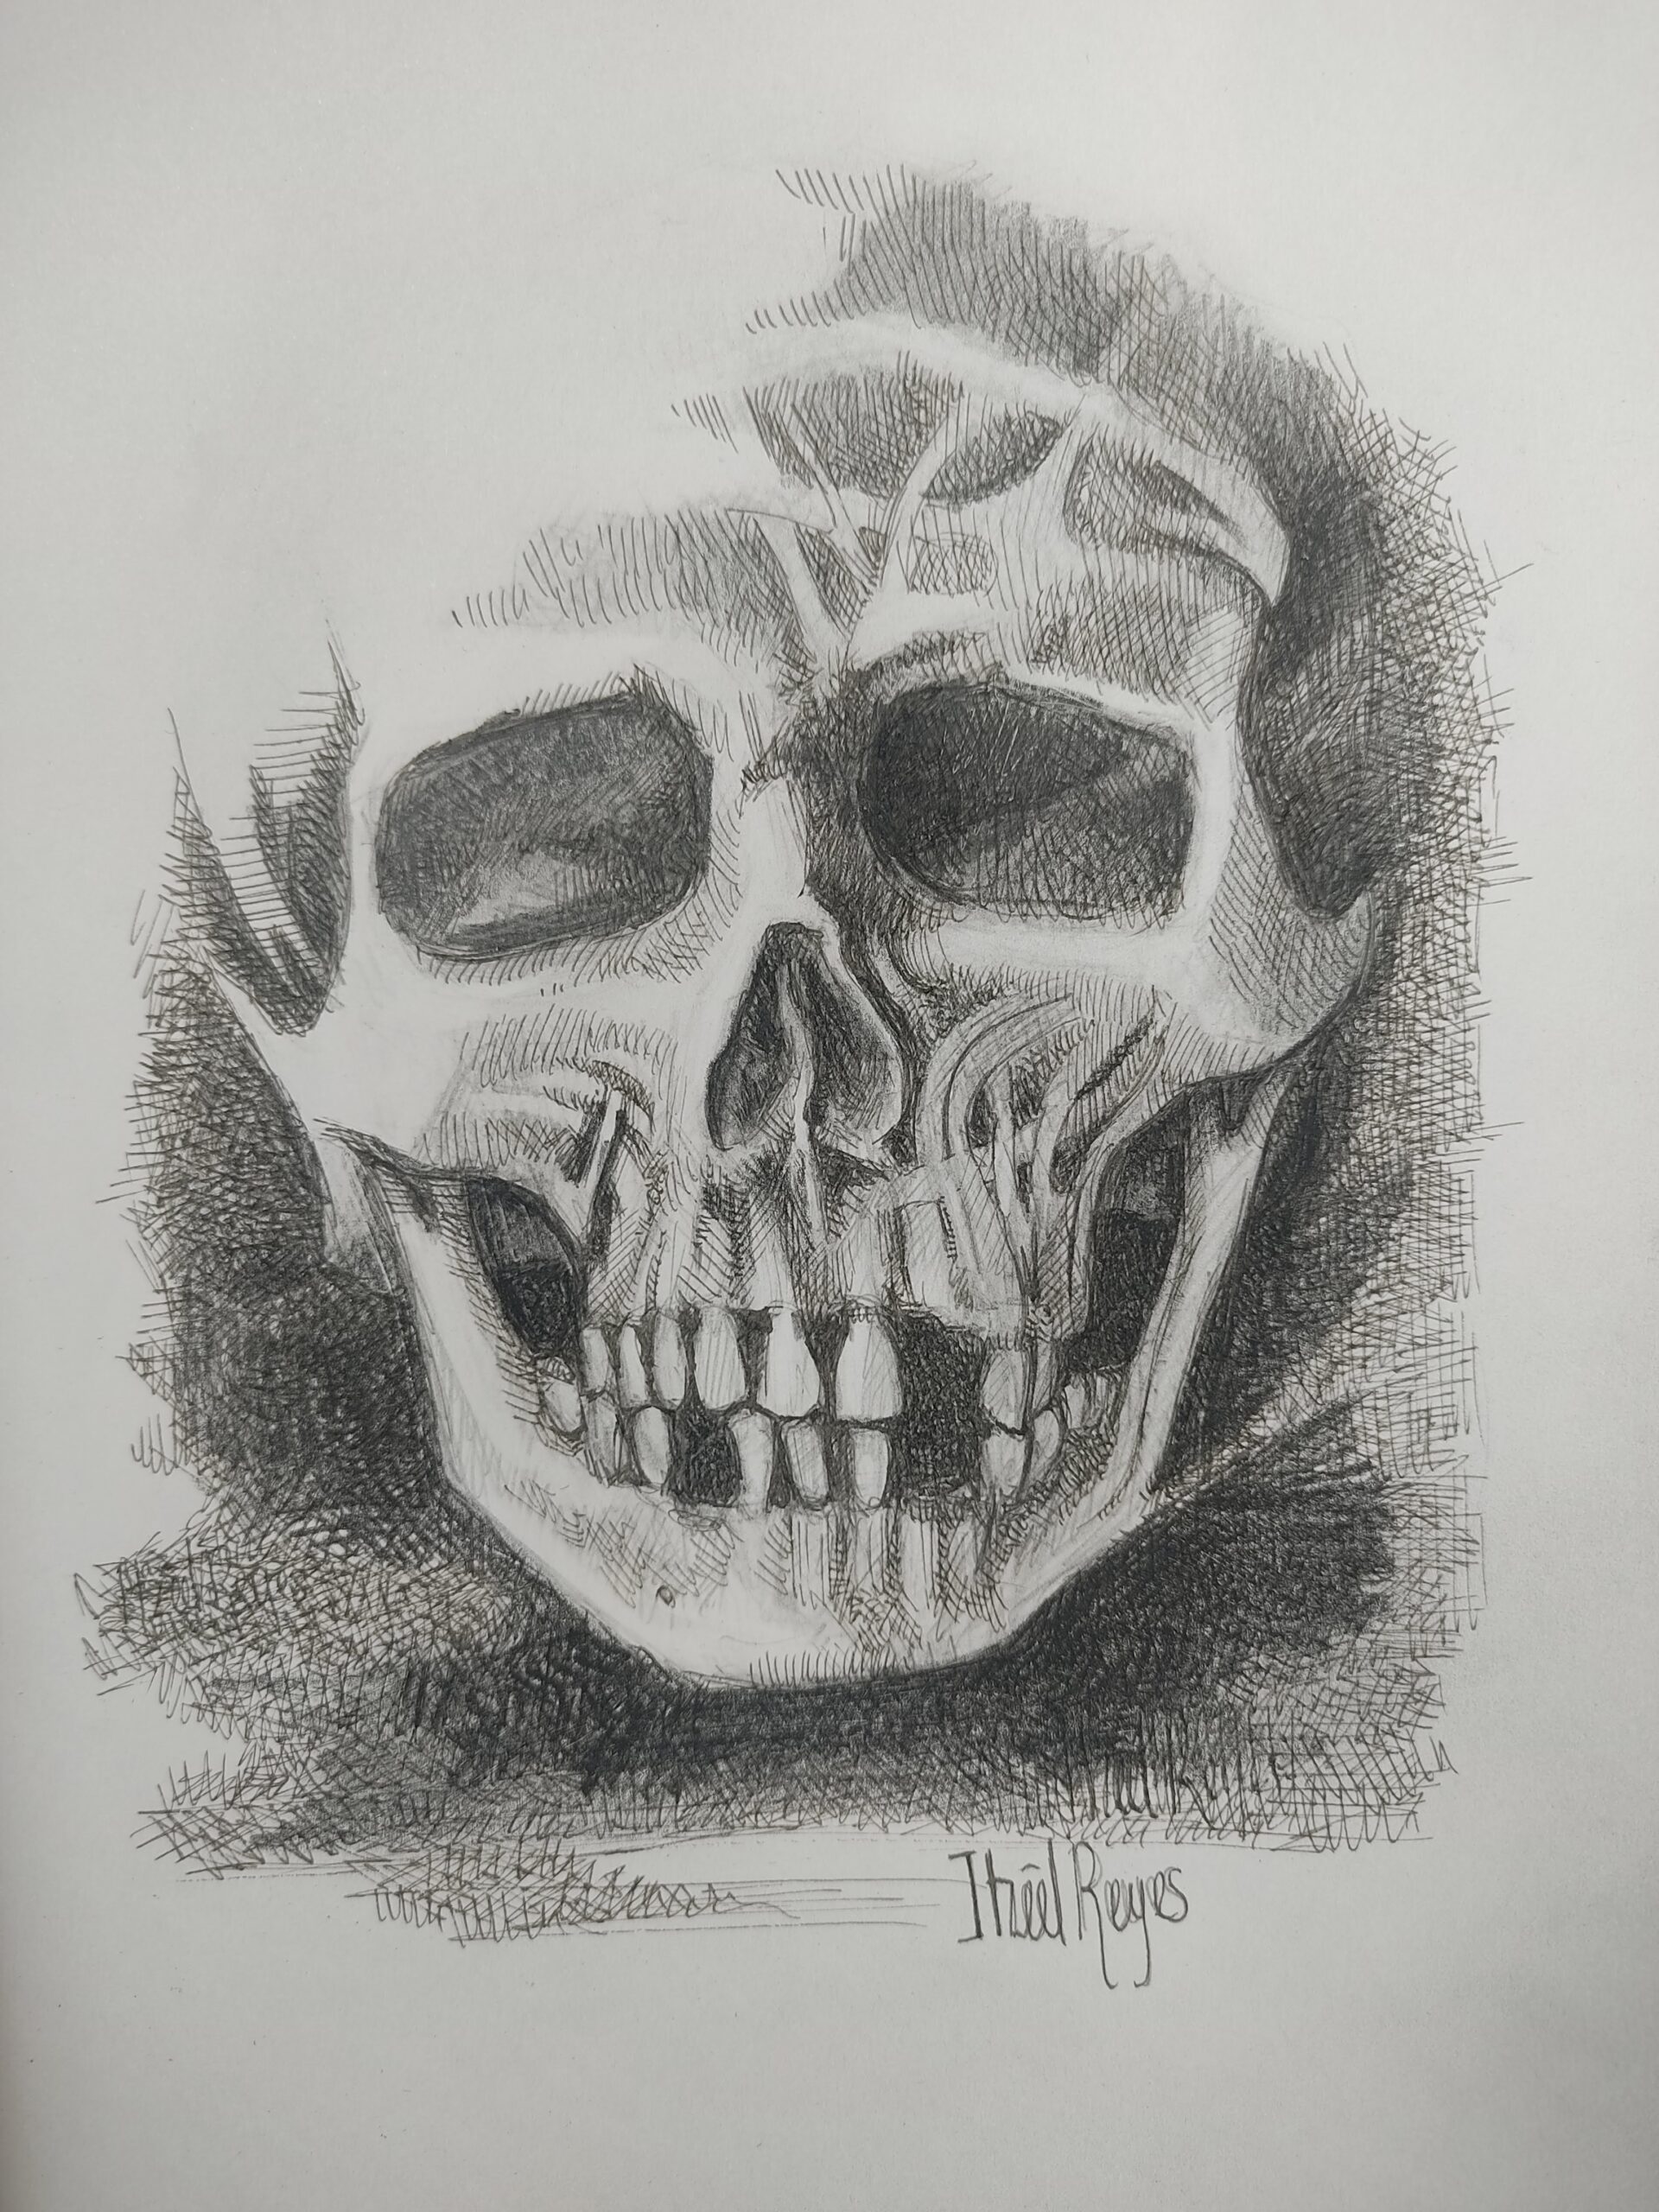 Título: “Cráneo 2 ”
Técnica: Tinta china sobre papel
Medidas: 20 x 20 cm 
Autora: Itzeel Reyes
Colección Privada